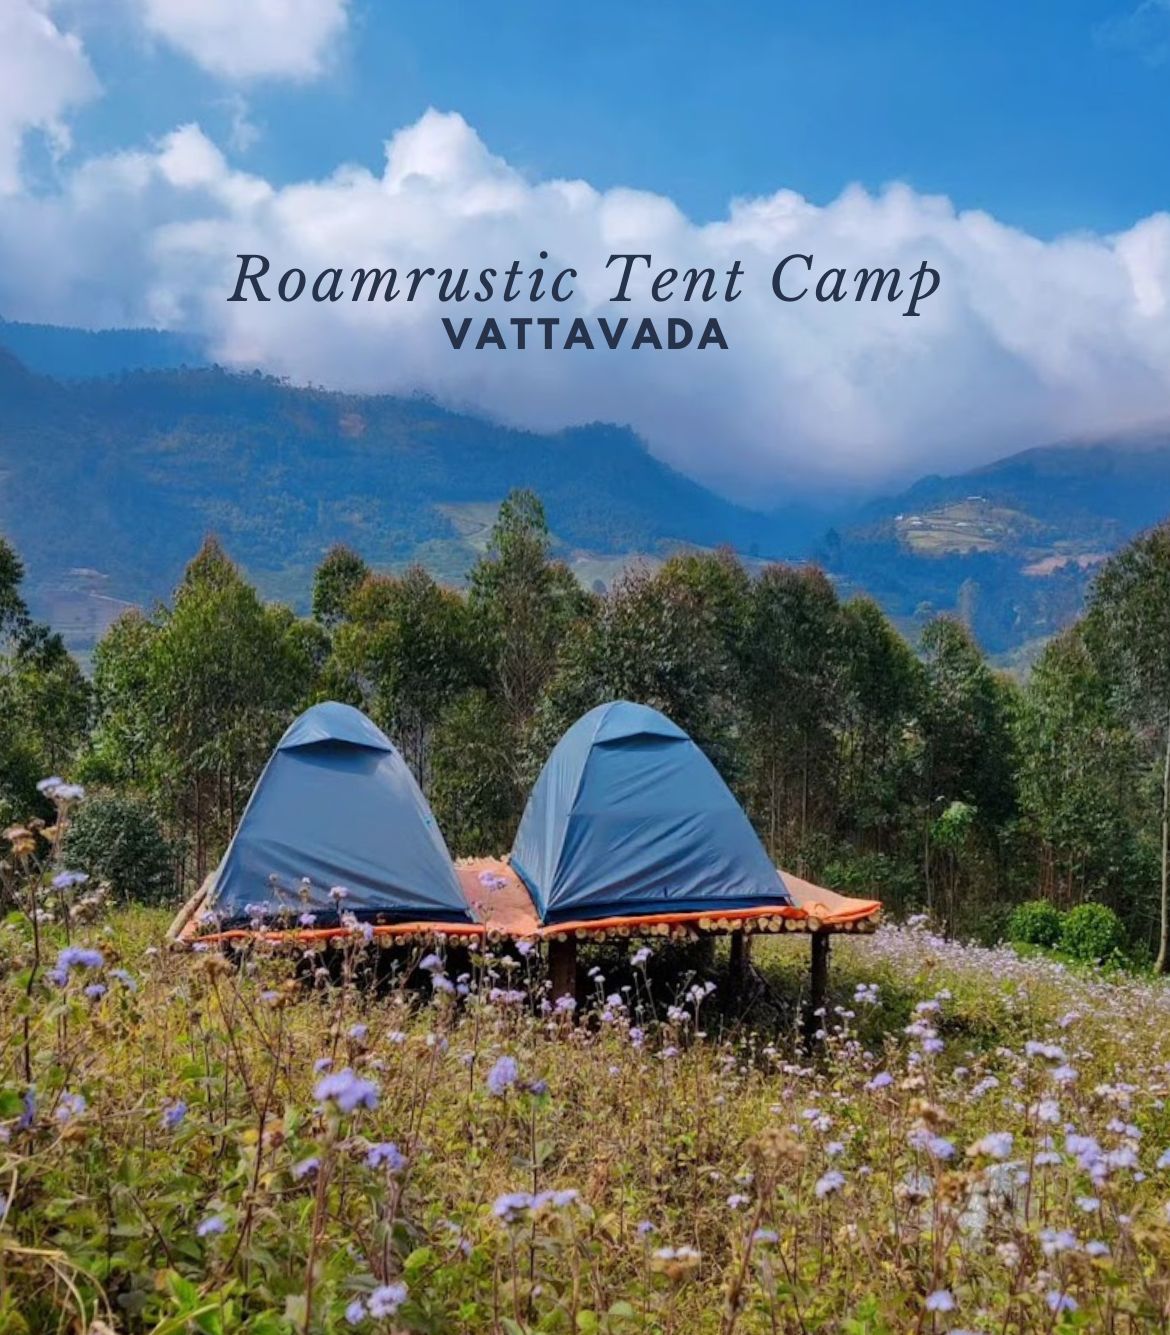 Roamrustic Tent Camp at Vattavada